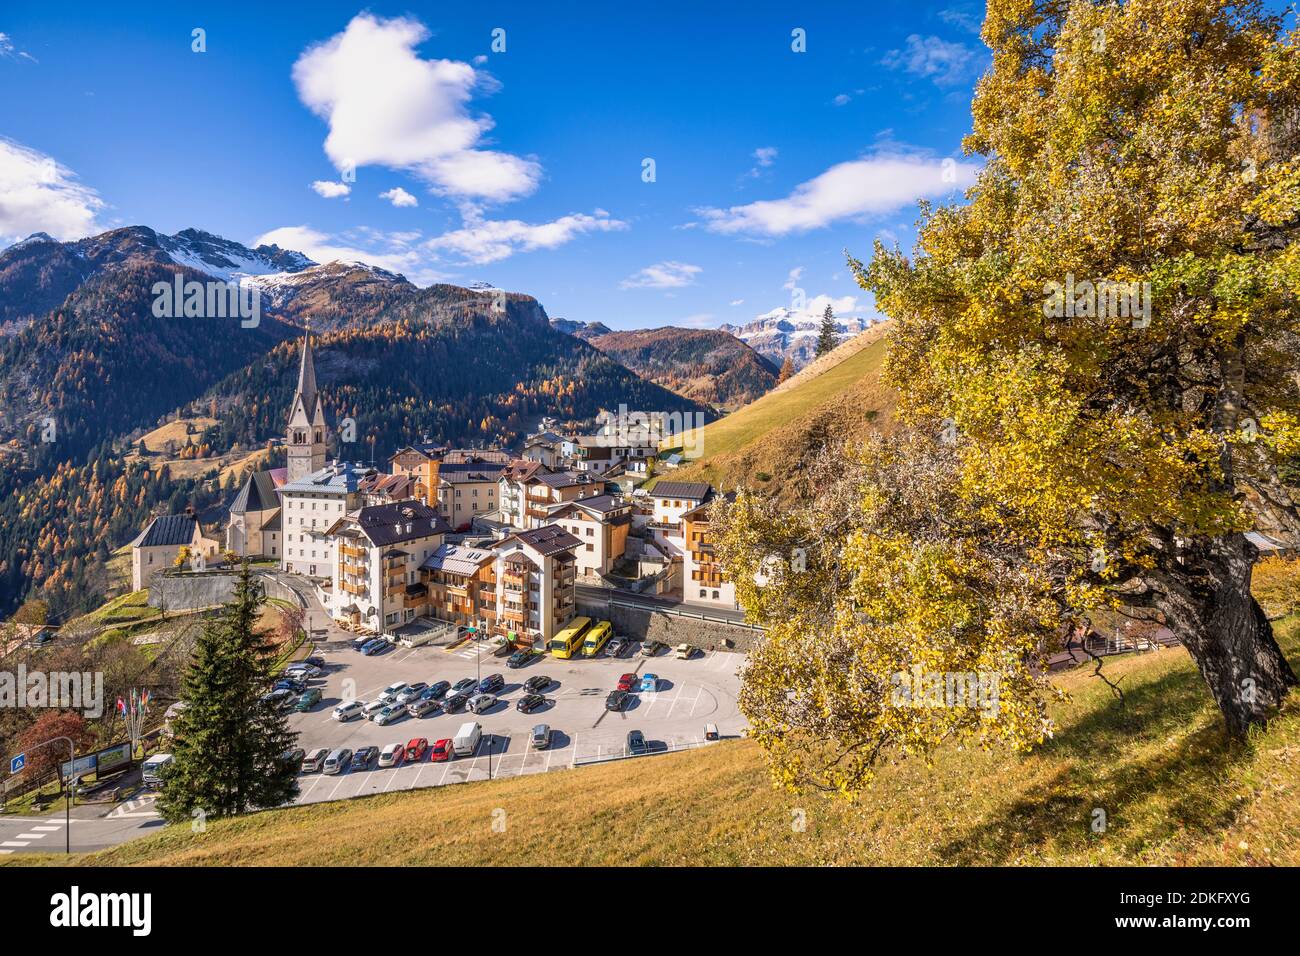 Autumn scenary in Dolomites, the village of Pieve di Livinallongo / Buchenstein, Livinallongo del Col di Lana, Dolomites, Belluno province, Veneto, Italy Stock Photo